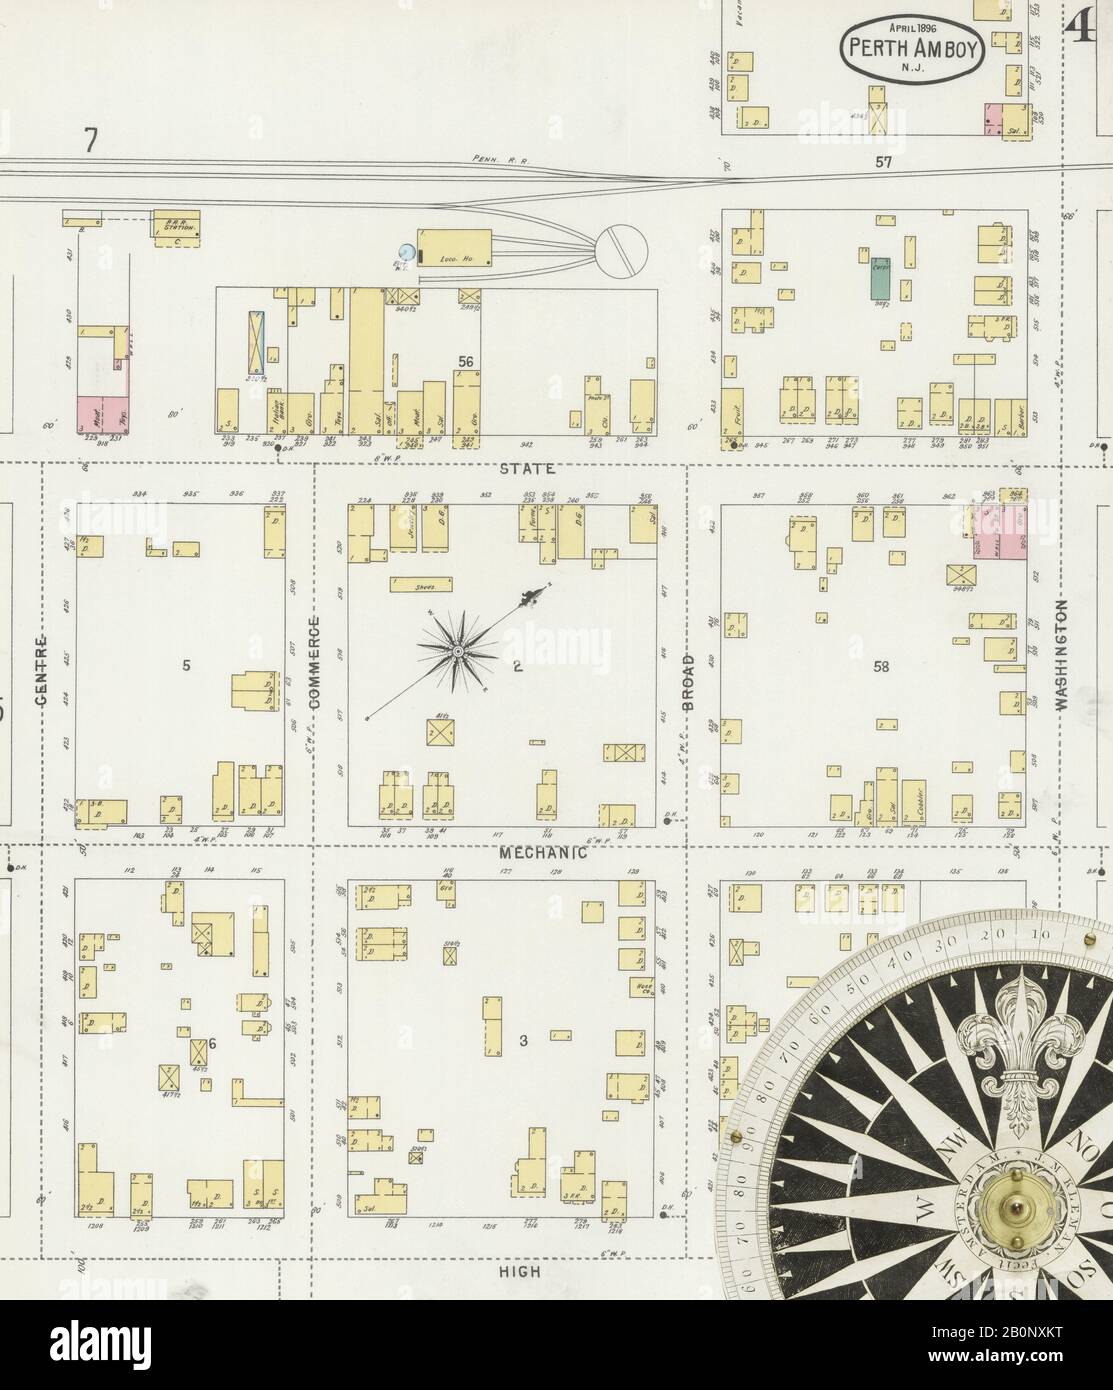 Imagen 4 De Sanborn Fire Insurance Map De Perth Amboy, Condado De Middlesex, Nueva Jersey. Abr 1896. 14 Hoja(s), América, mapa de calles con una brújula del siglo Xix Foto de stock